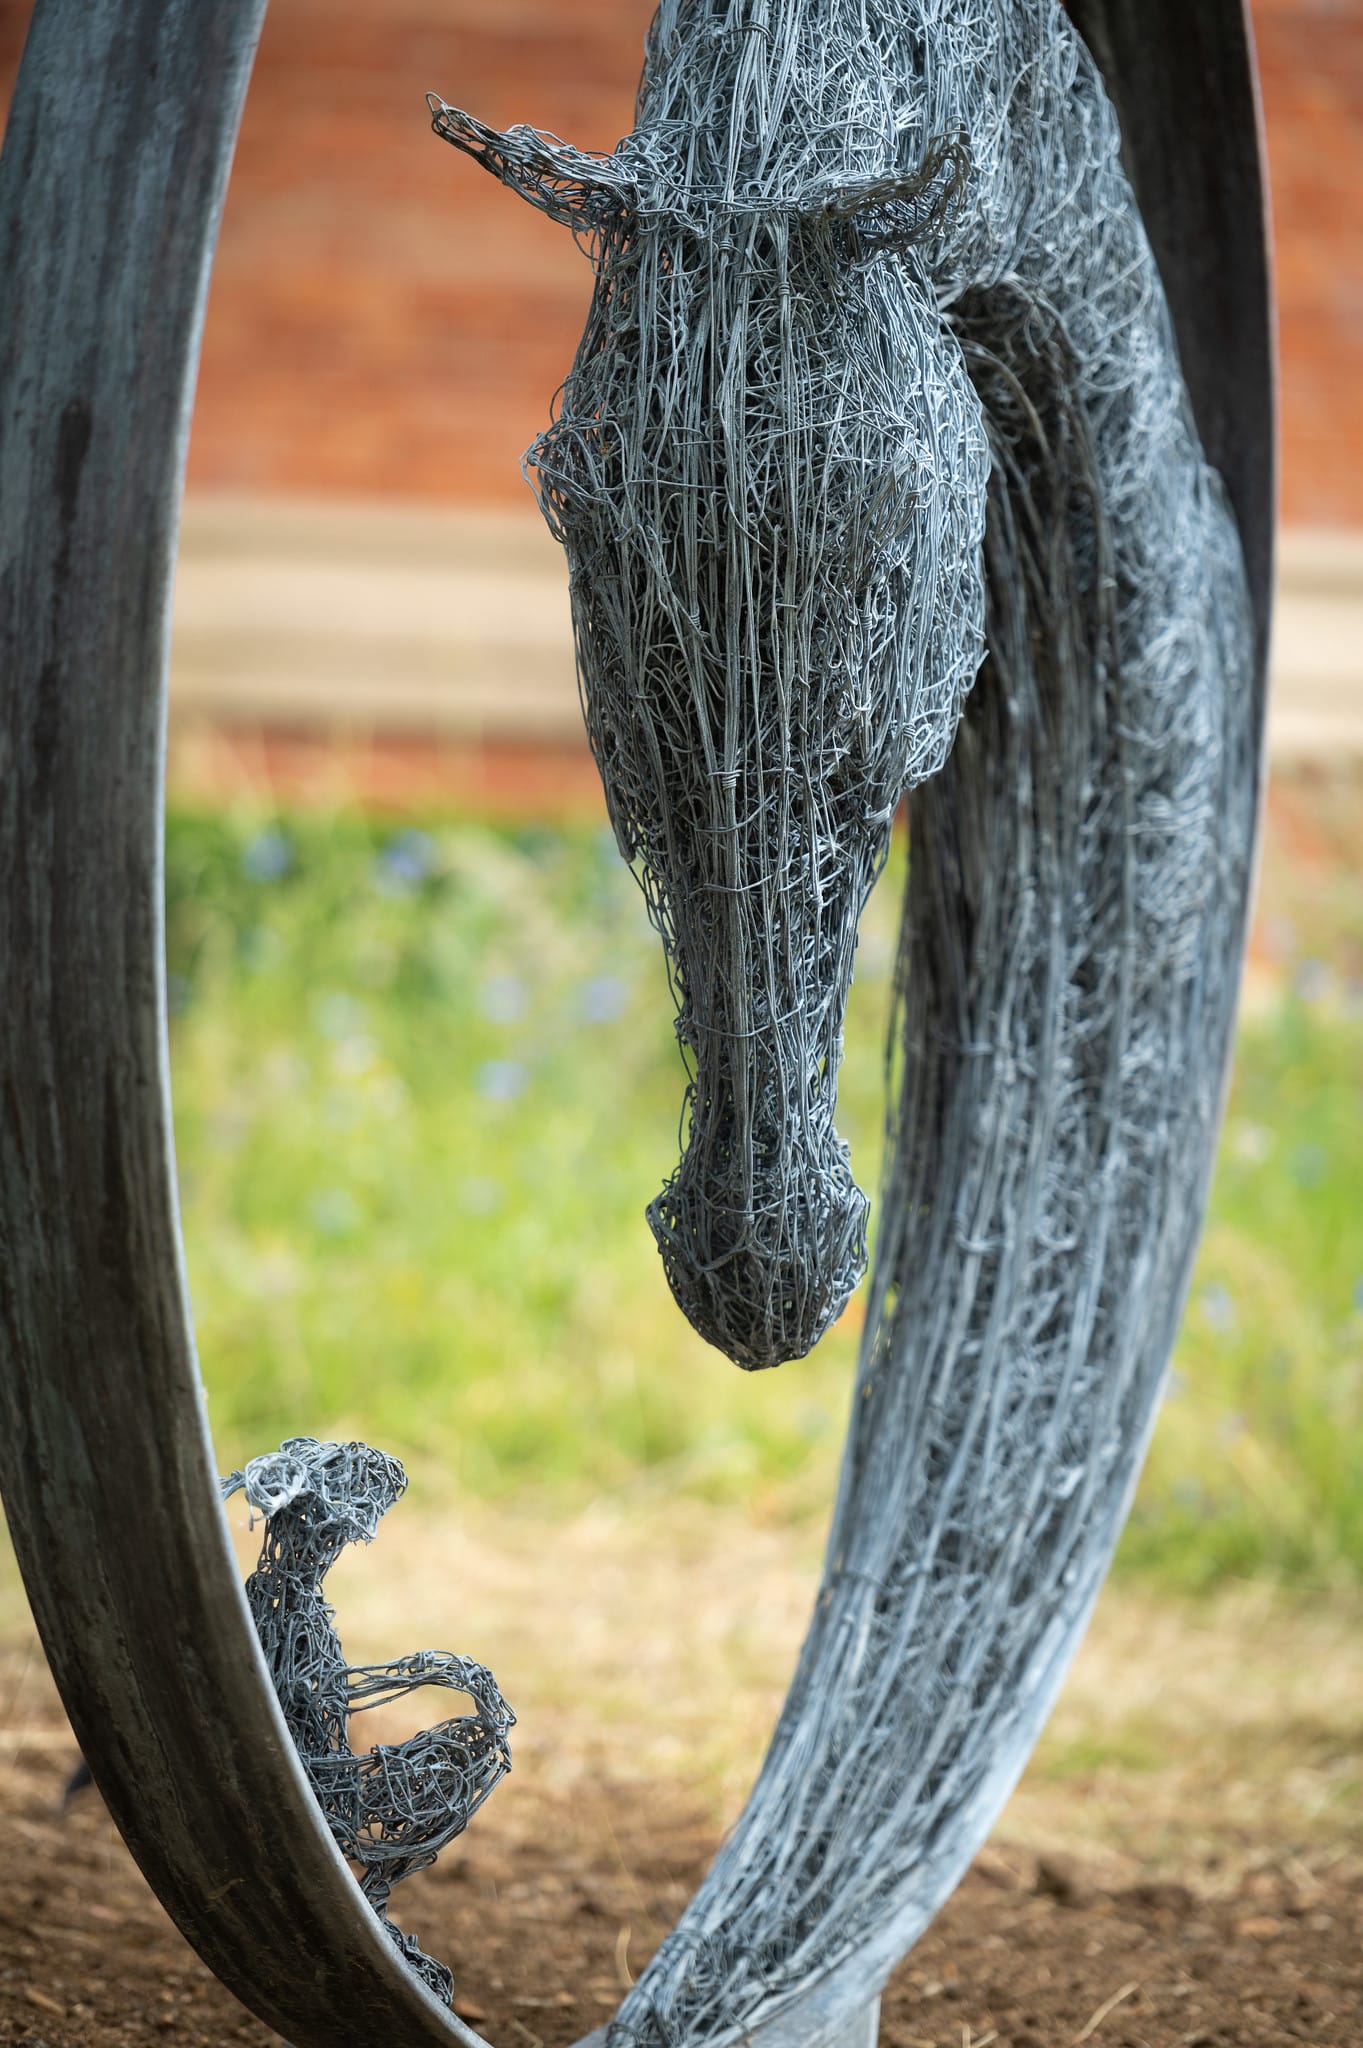 'Never Alone' sculpture by Rupert Till, OR